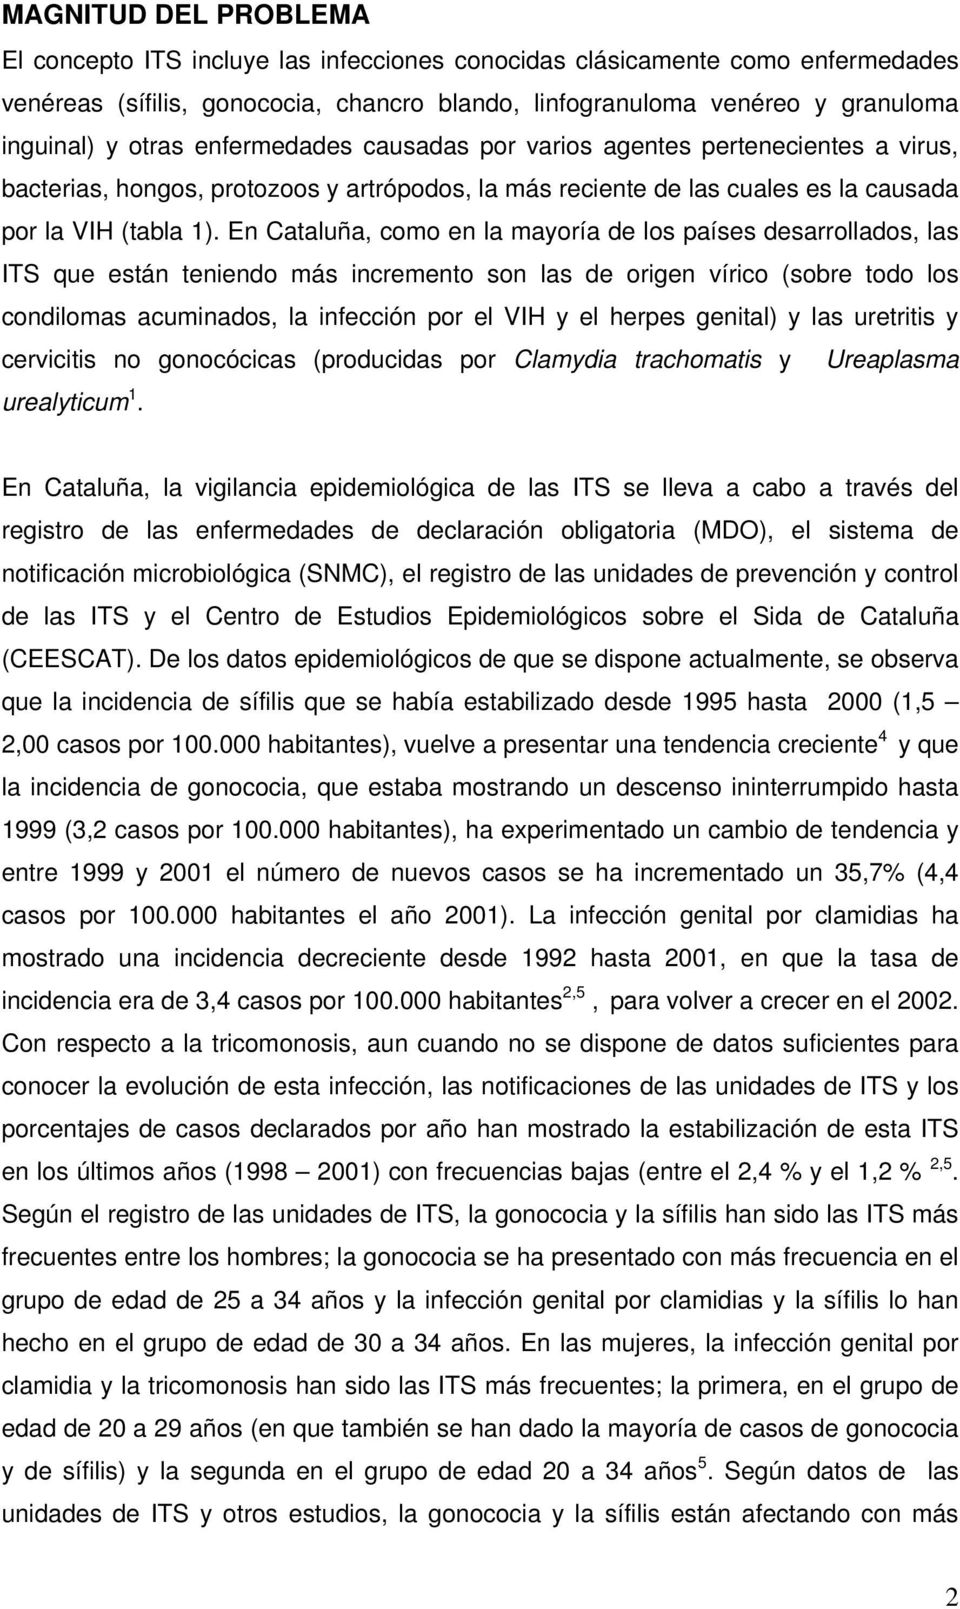 En Cataluña, como en la mayoría de los países desarrollados, las ITS que están teniendo más incremento son las de origen vírico (sobre todo los condilomas acuminados, la infección por el VIH y el